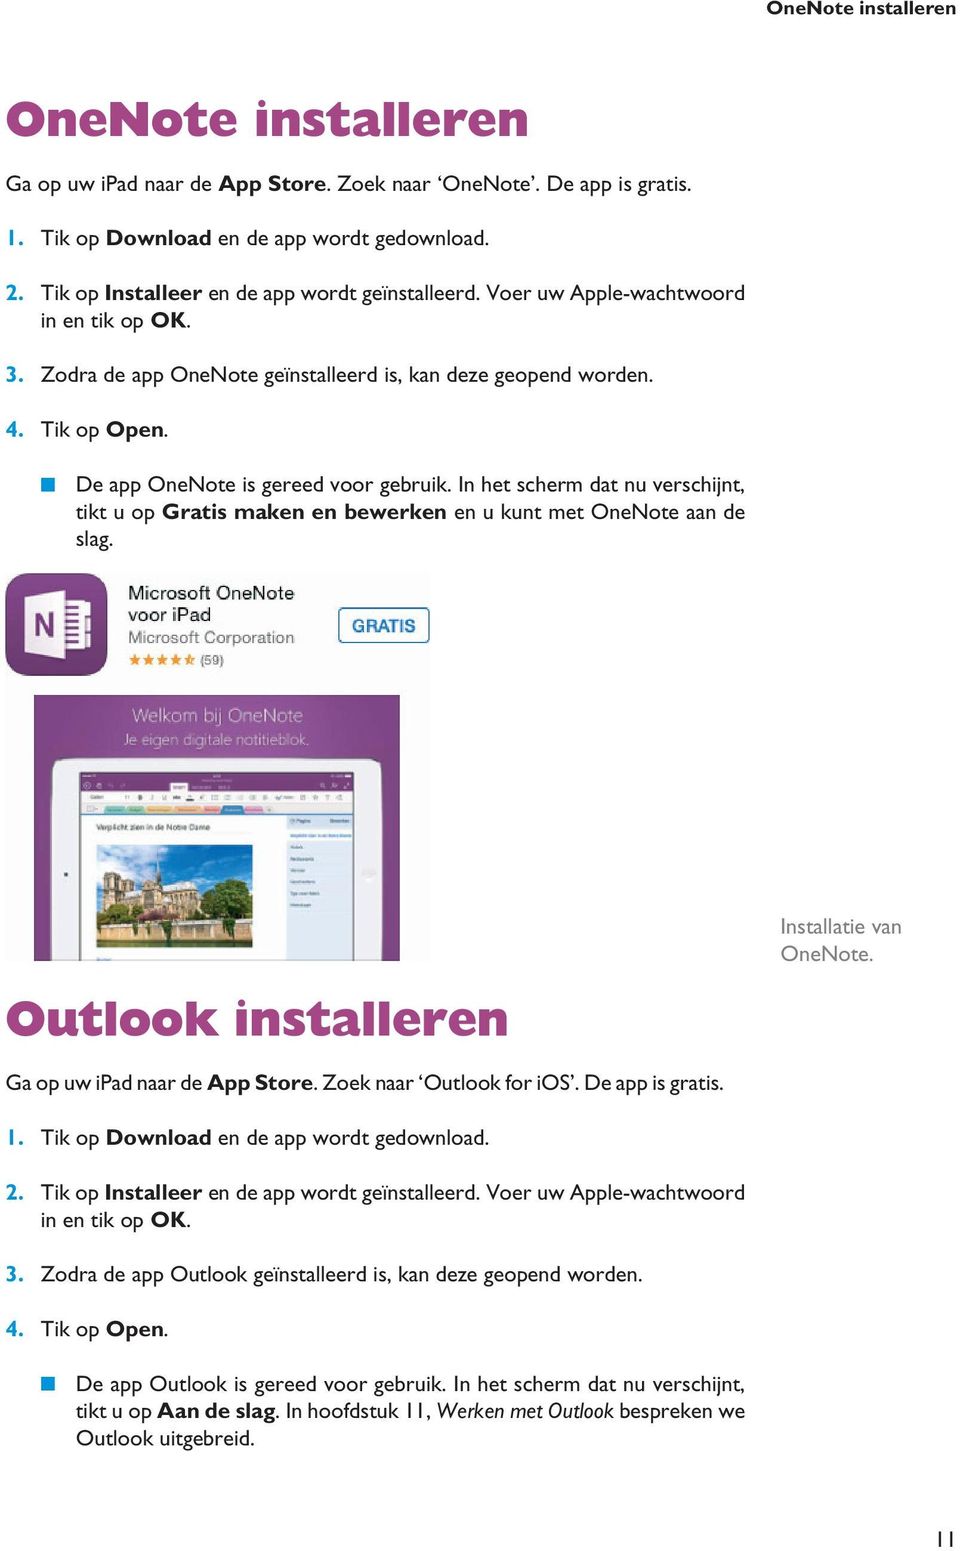 De app OneNote is gereed voor gebruik. In het scherm dat nu verschijnt, tikt u op Gratis maken en bewerken en u kunt met OneNote aan de slag. Outlook installeren Installatie van OneNote.